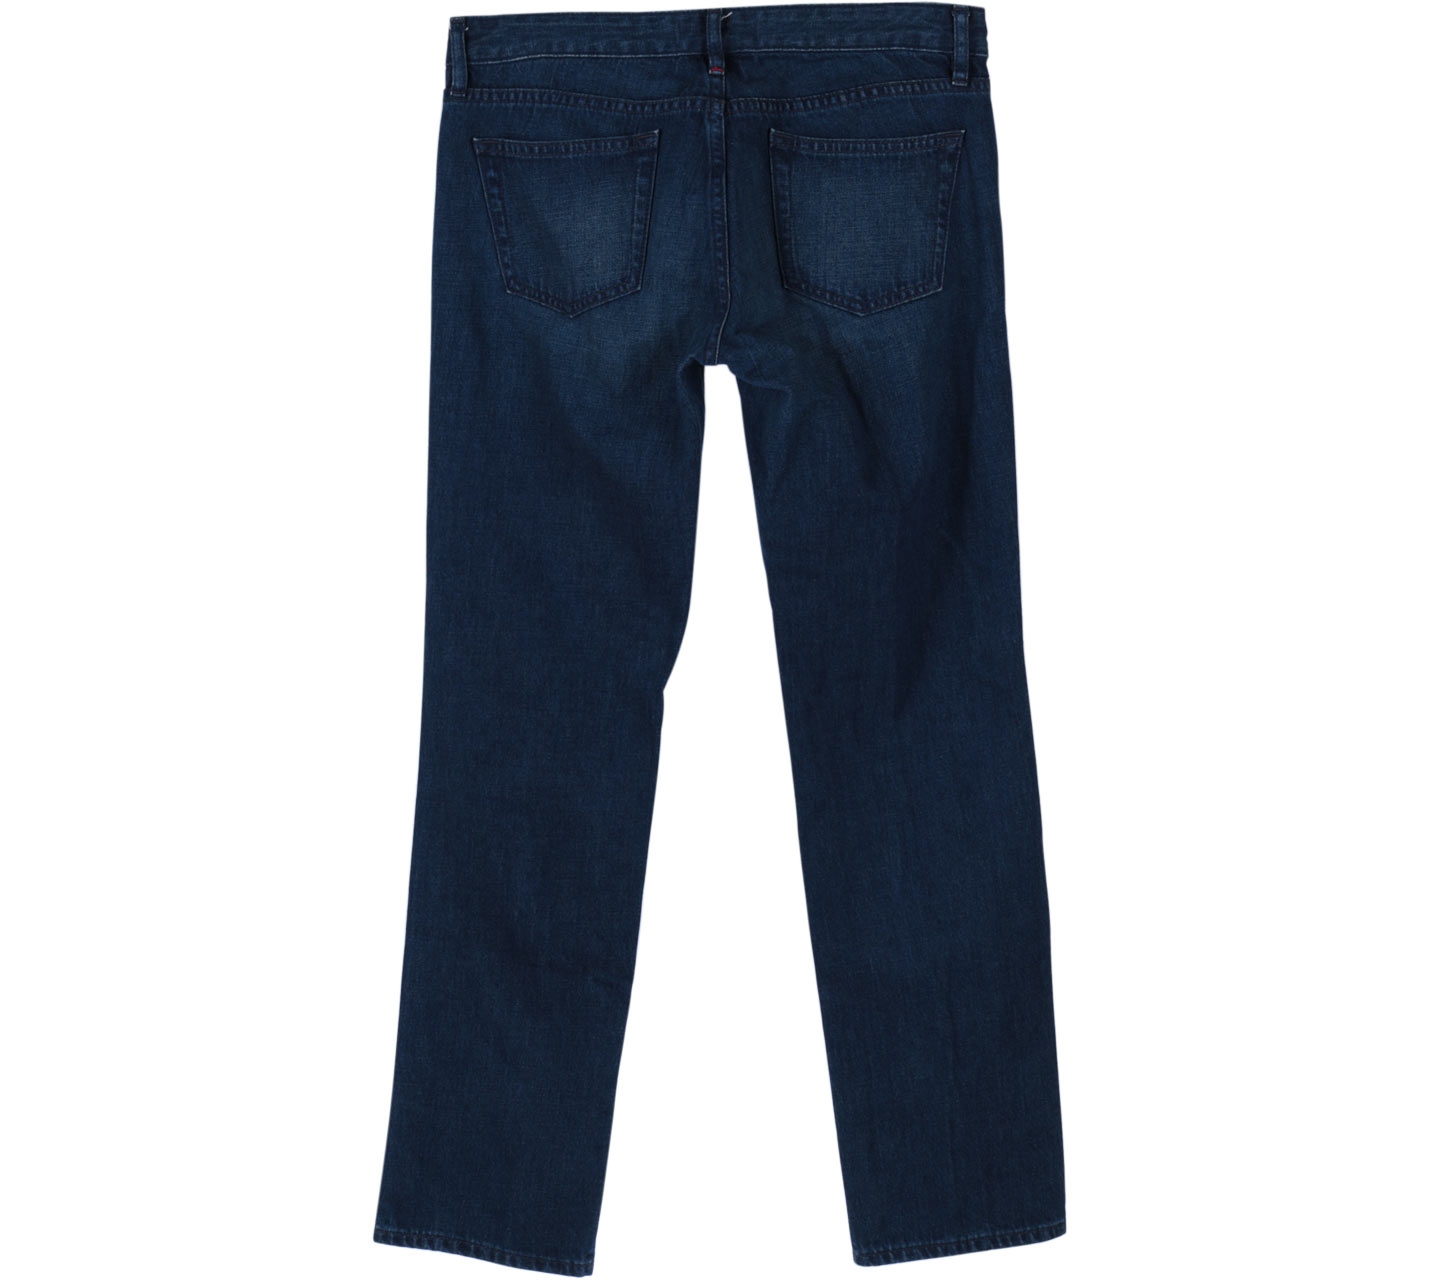 UNIQLO Blue Jeans Pants